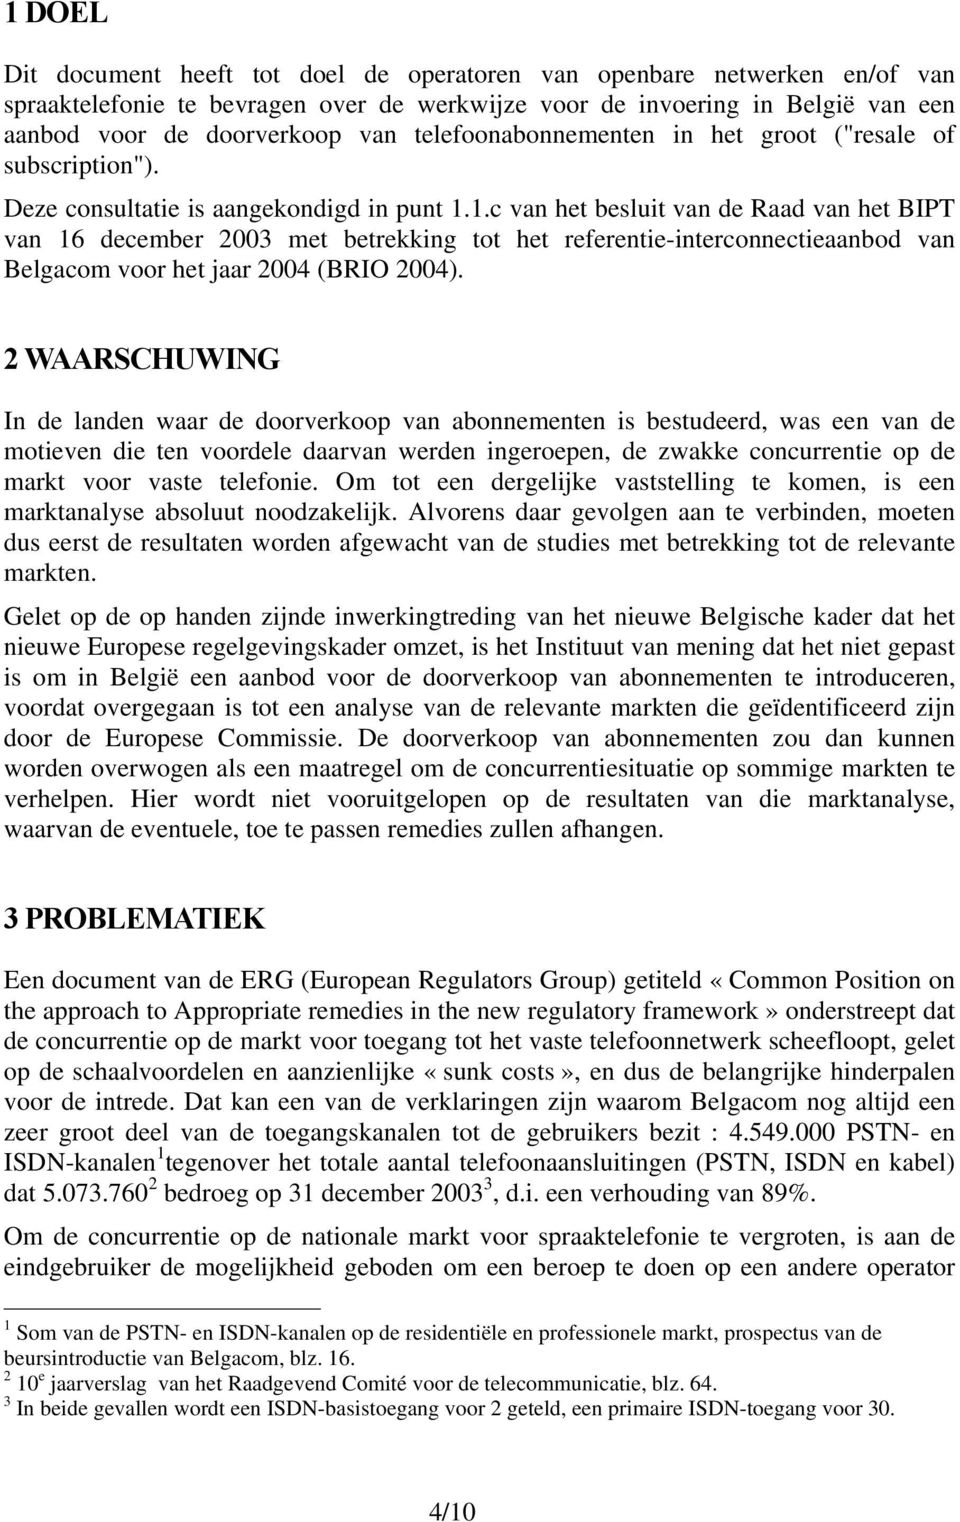 1.c van het besluit van de Raad van het BIPT van 16 december 2003 met betrekking tot het referentie-interconnectieaanbod van Belgacom voor het jaar 2004 (BRIO 2004).